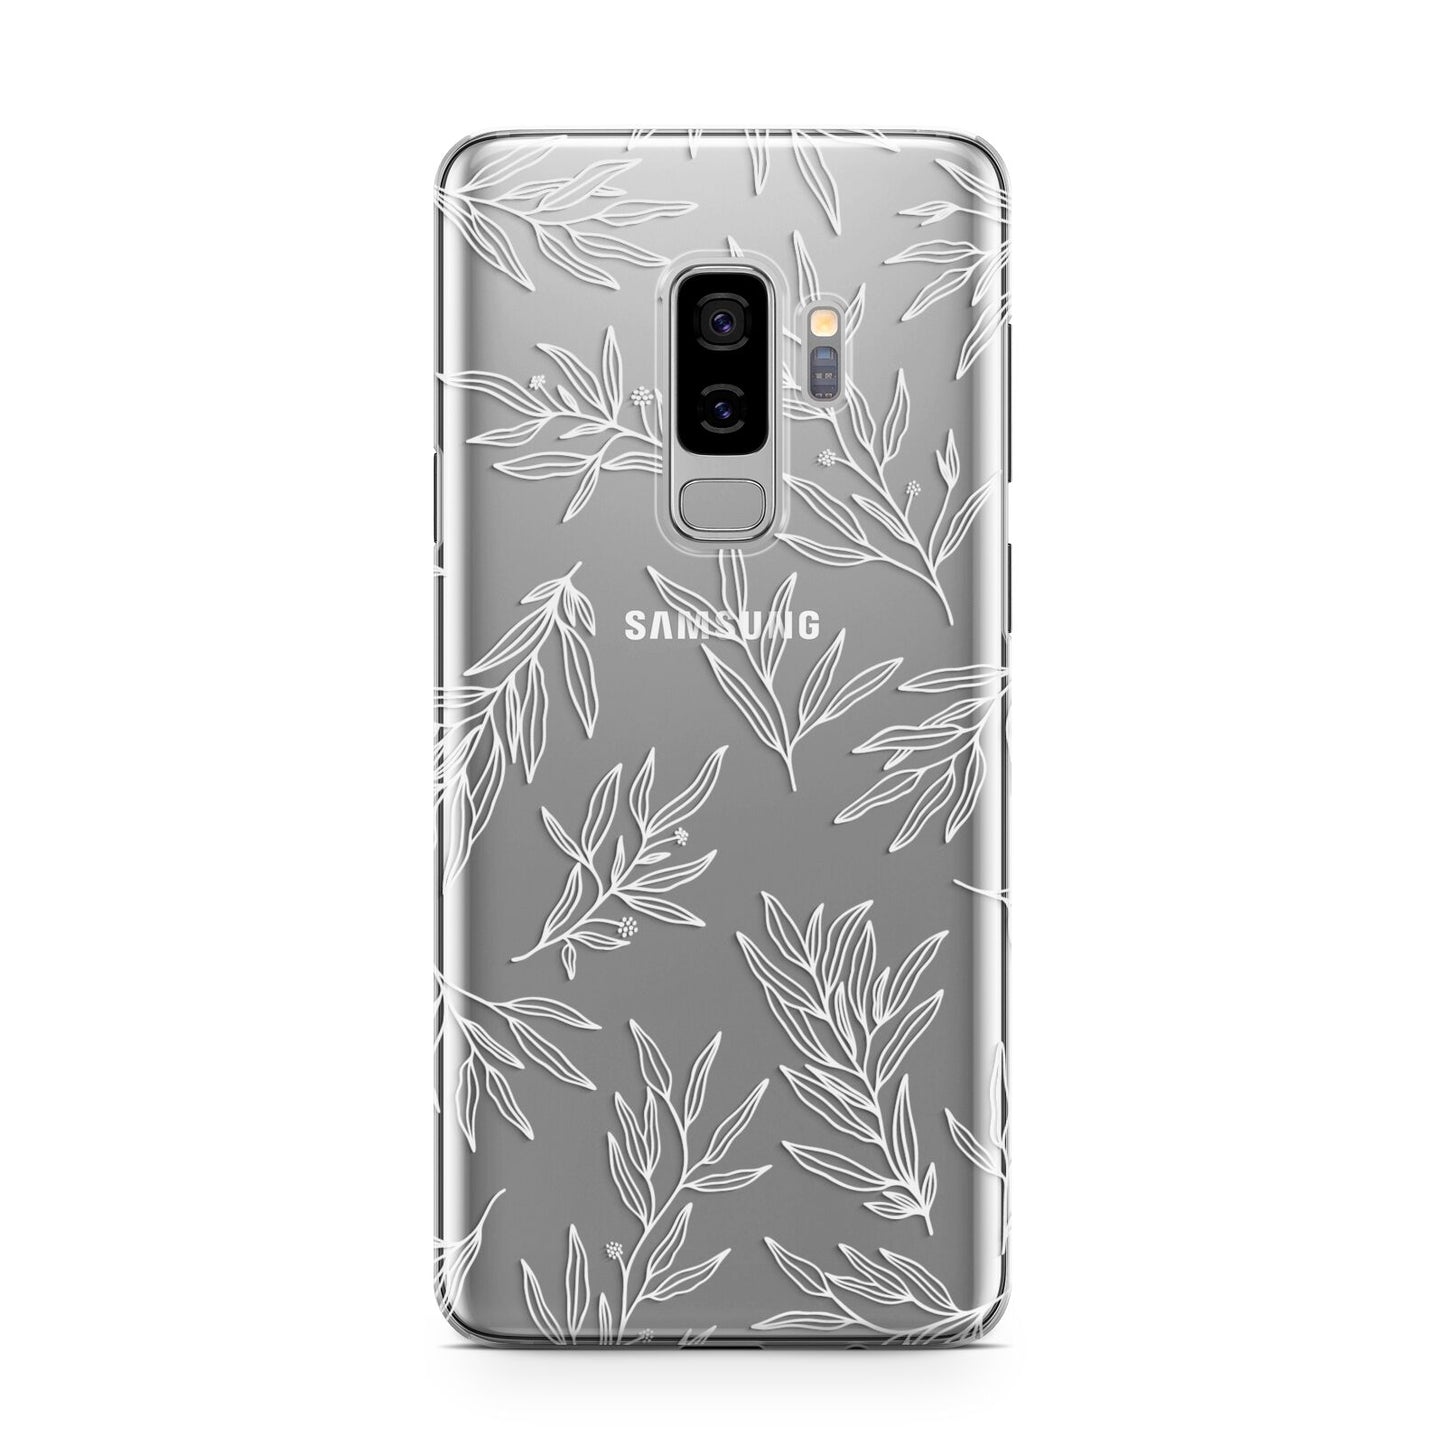 Botanical Leaf Samsung Galaxy S9 Plus Case on Silver phone